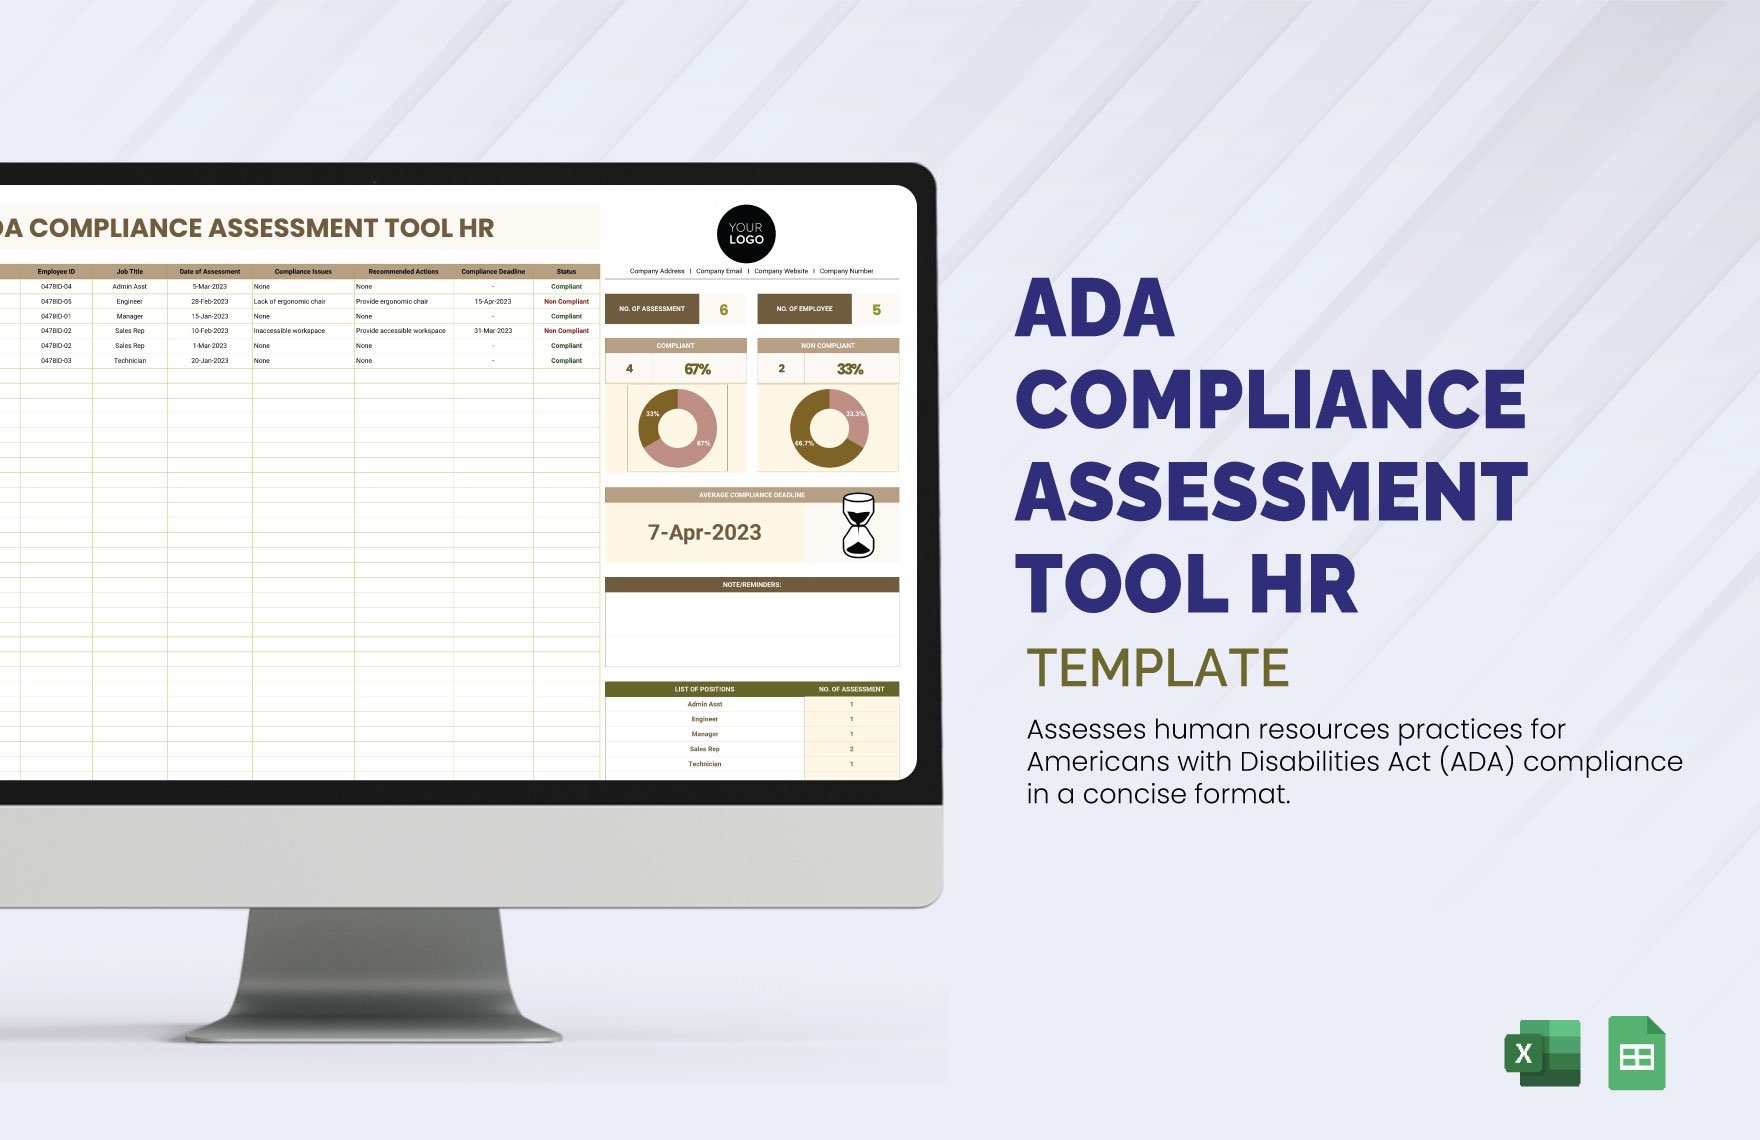 ADA Compliance Assessment Tool HR Template